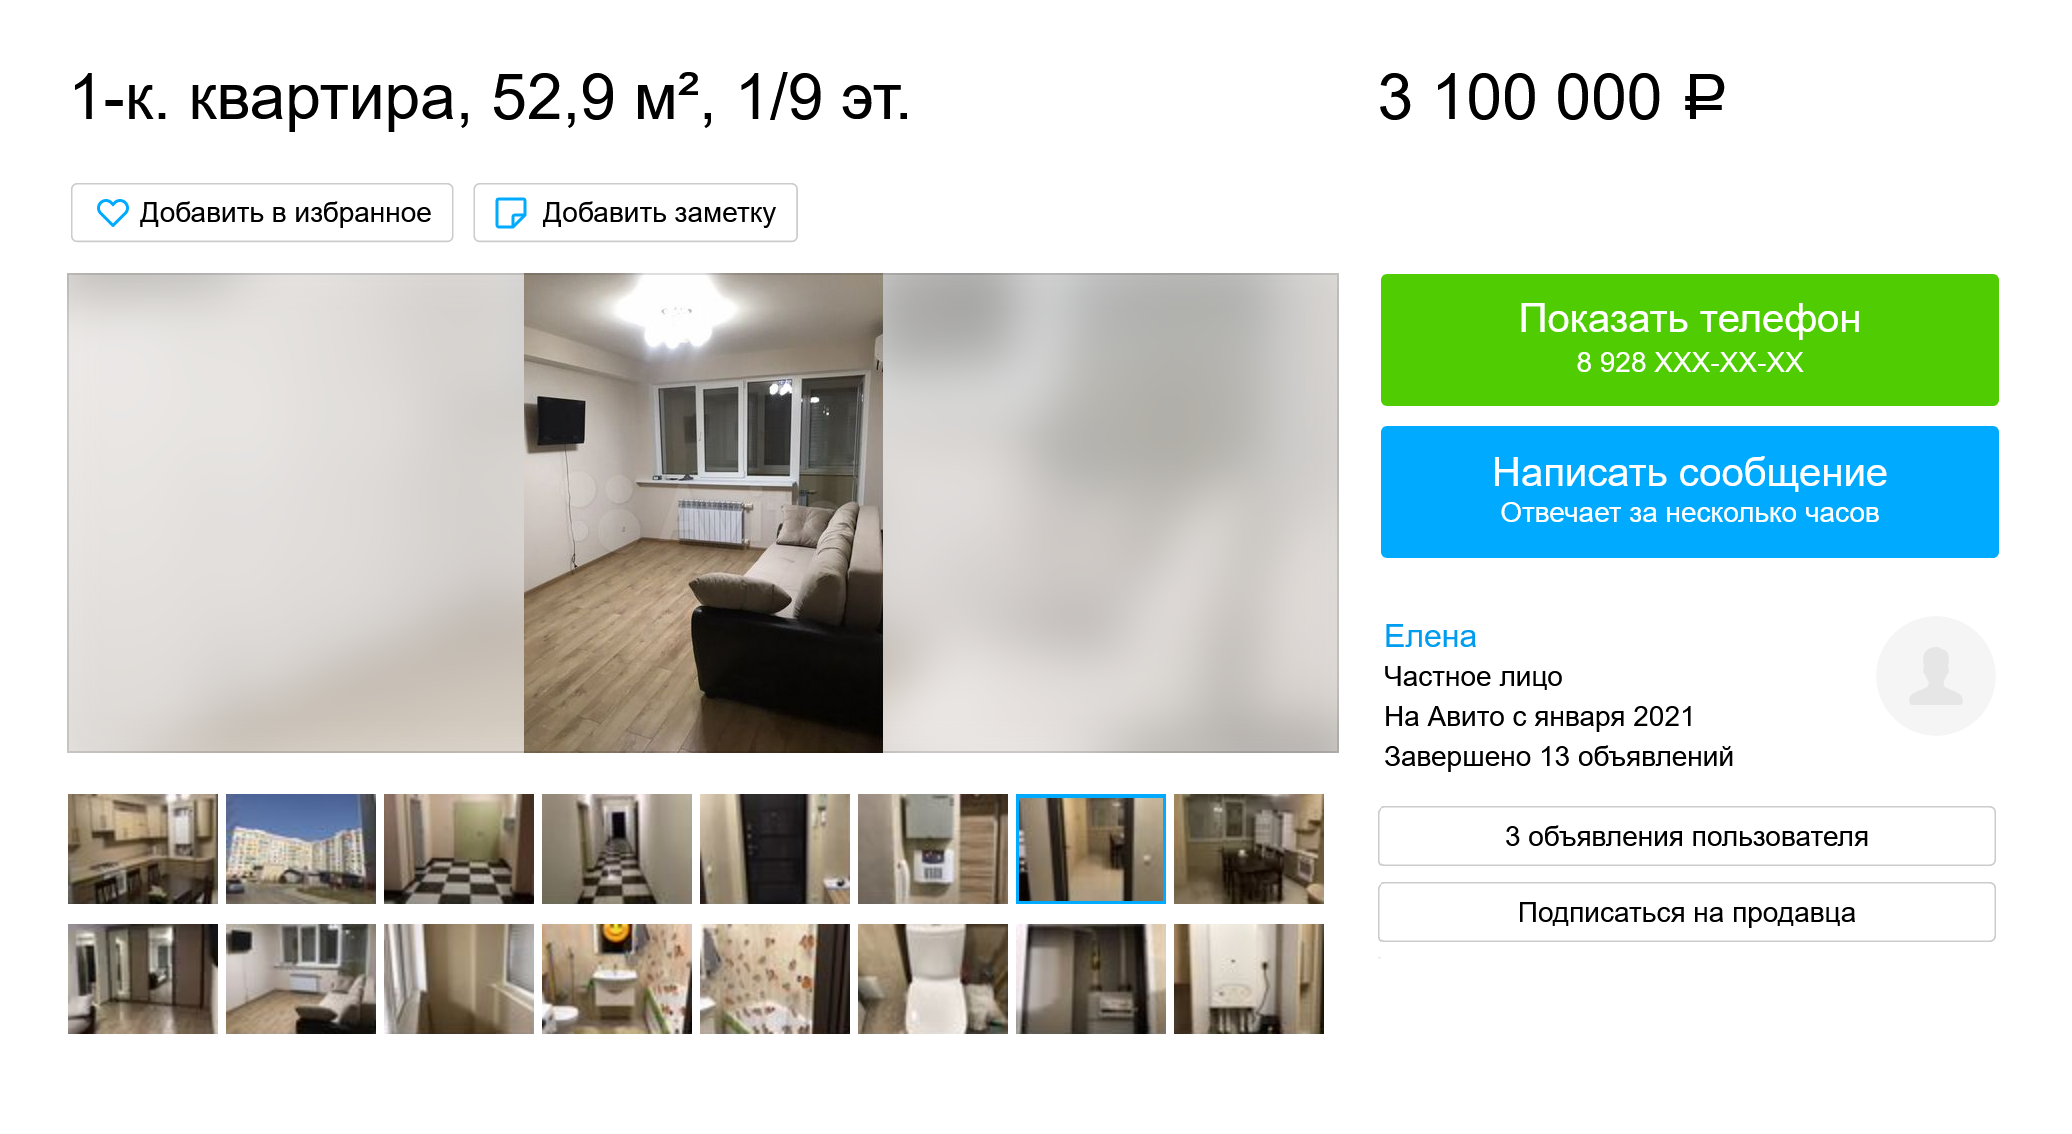 Самая шикарная однокомнатная квартира на вторичном рынке стоит 3,1 млн рублей. Владельцы готовы отдать кухонный гарнитур и другую мебель